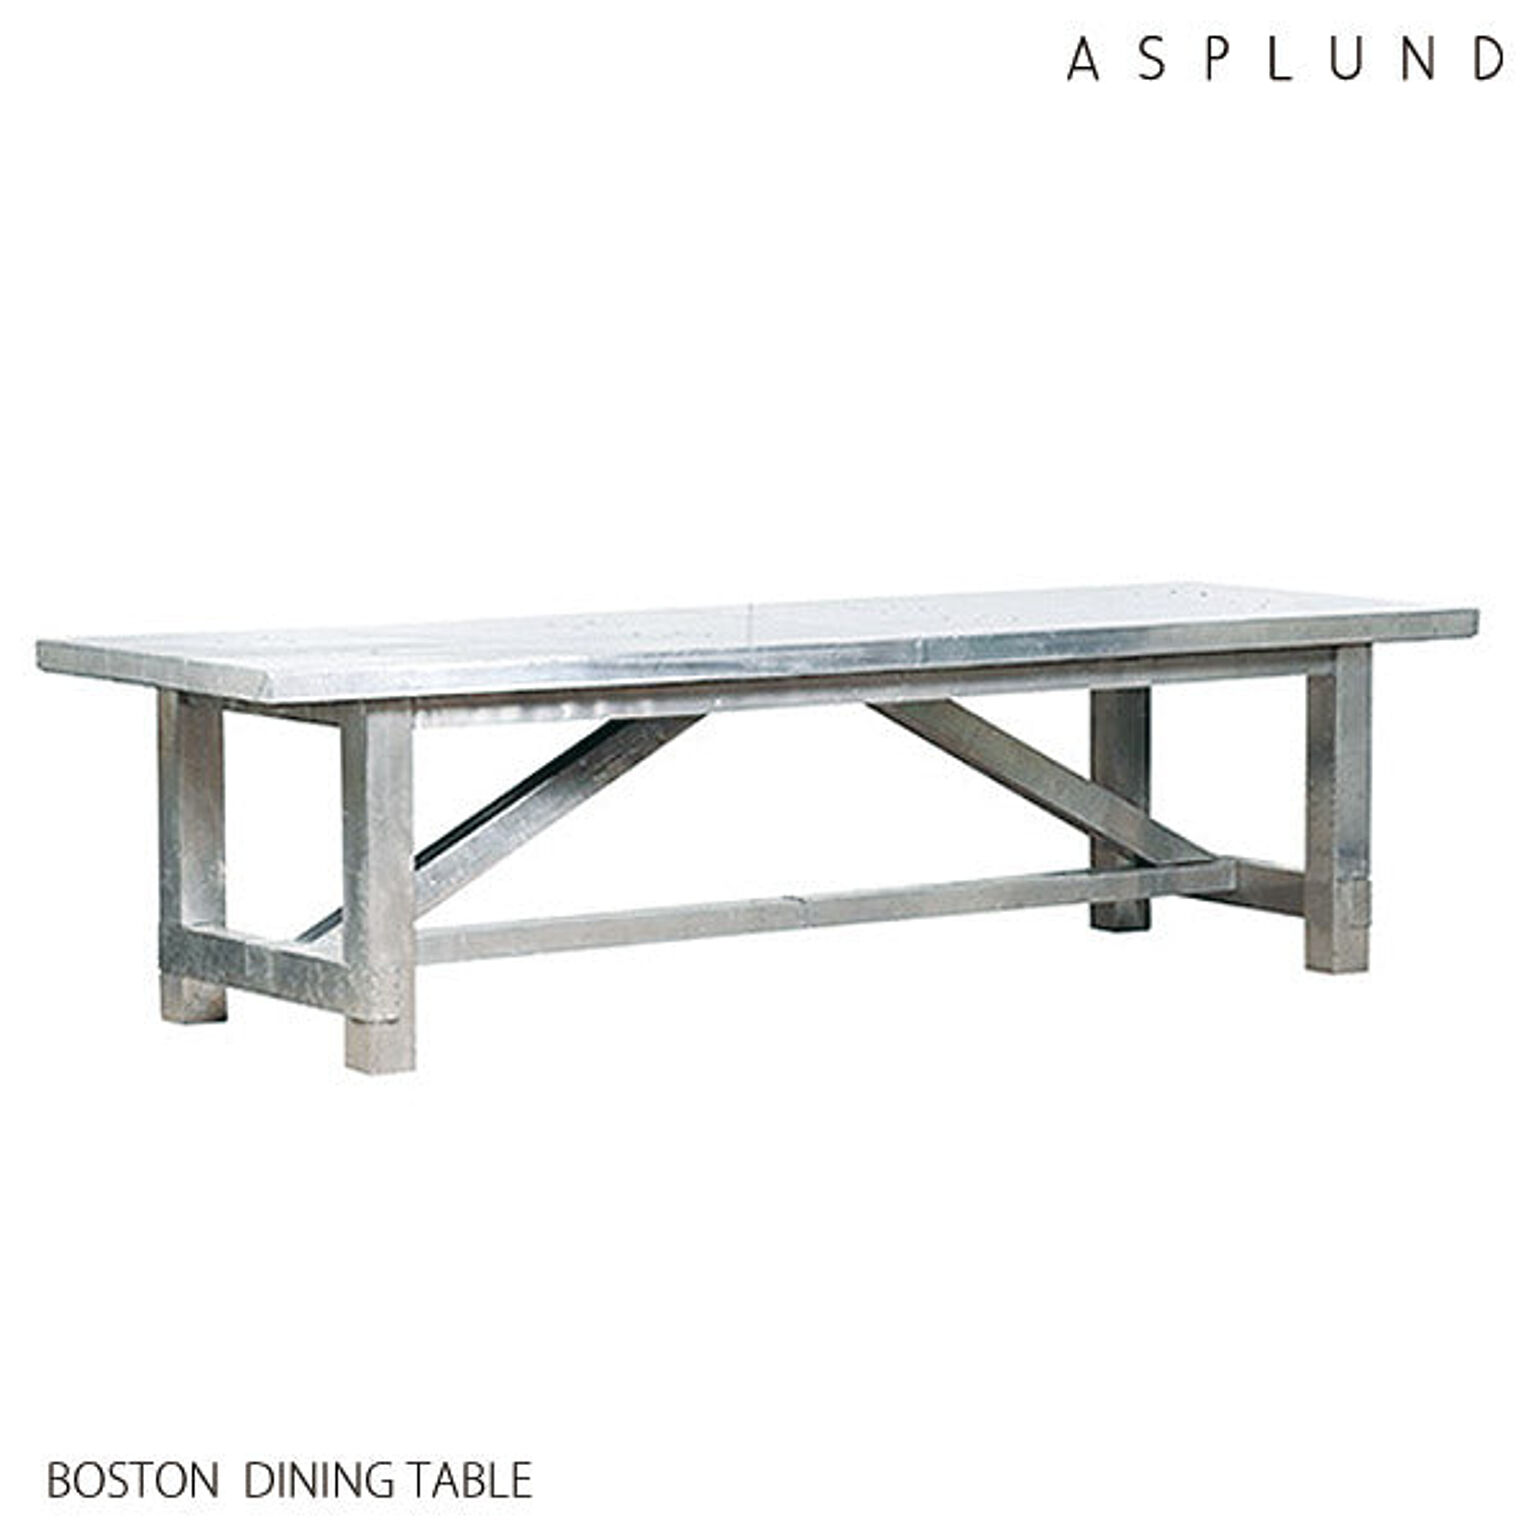 ASPLUND HALO BOSTON ダイニングテーブル 幅290 奥行100 高さ76 アルミニウム ダメージ加工 シルバー色